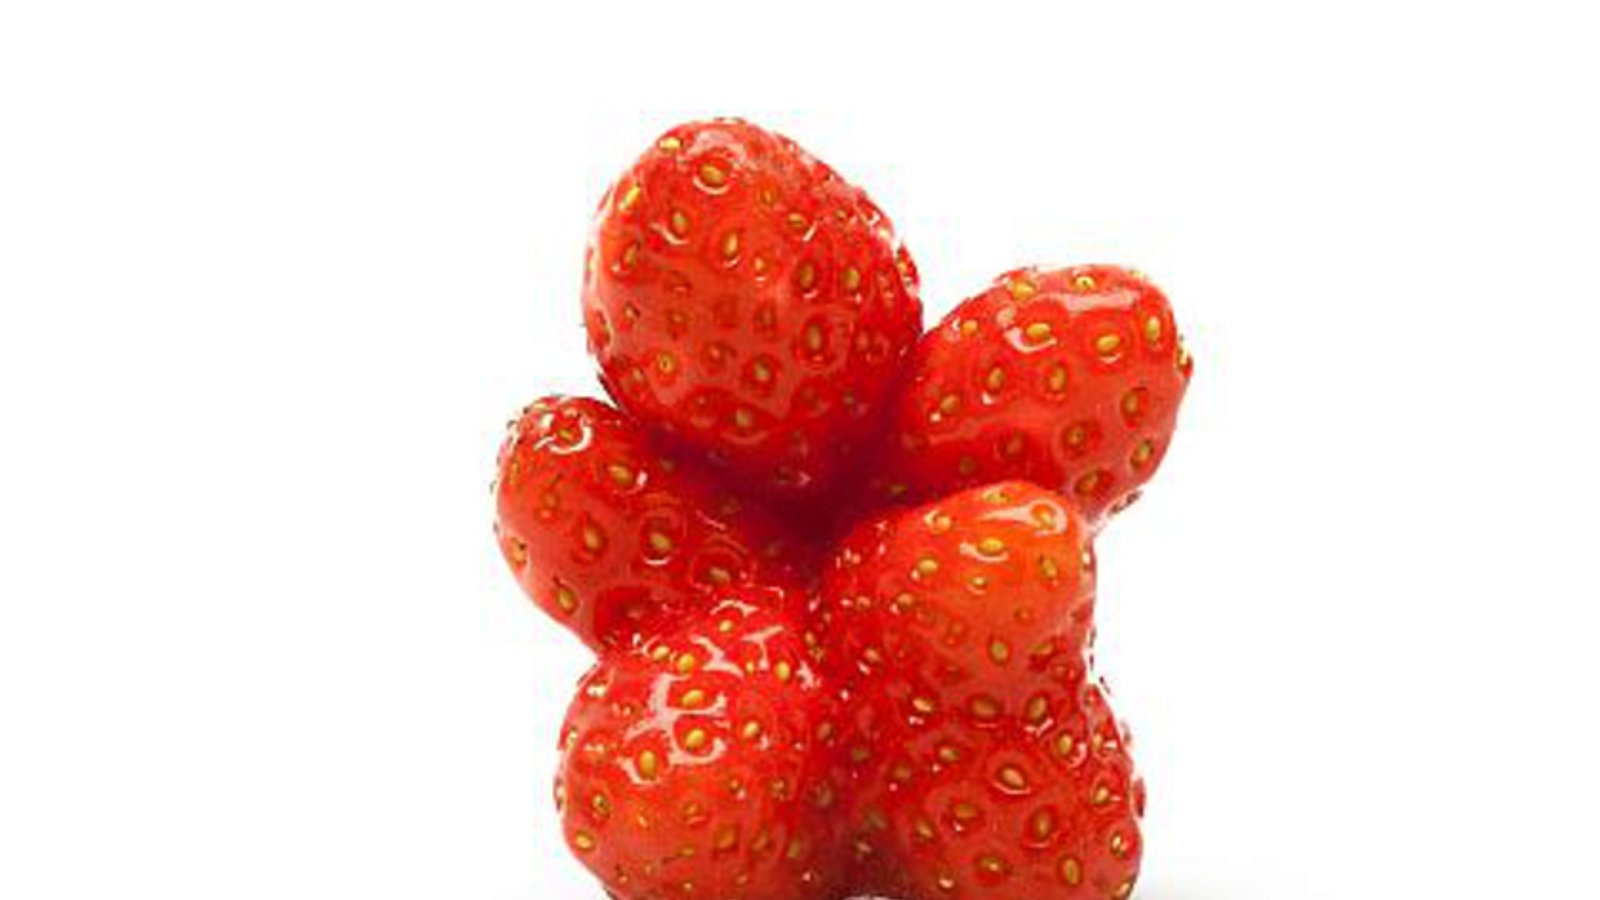 Unförmige Erdbeere, die mehrere Fruchtkörper ausgebildet hat